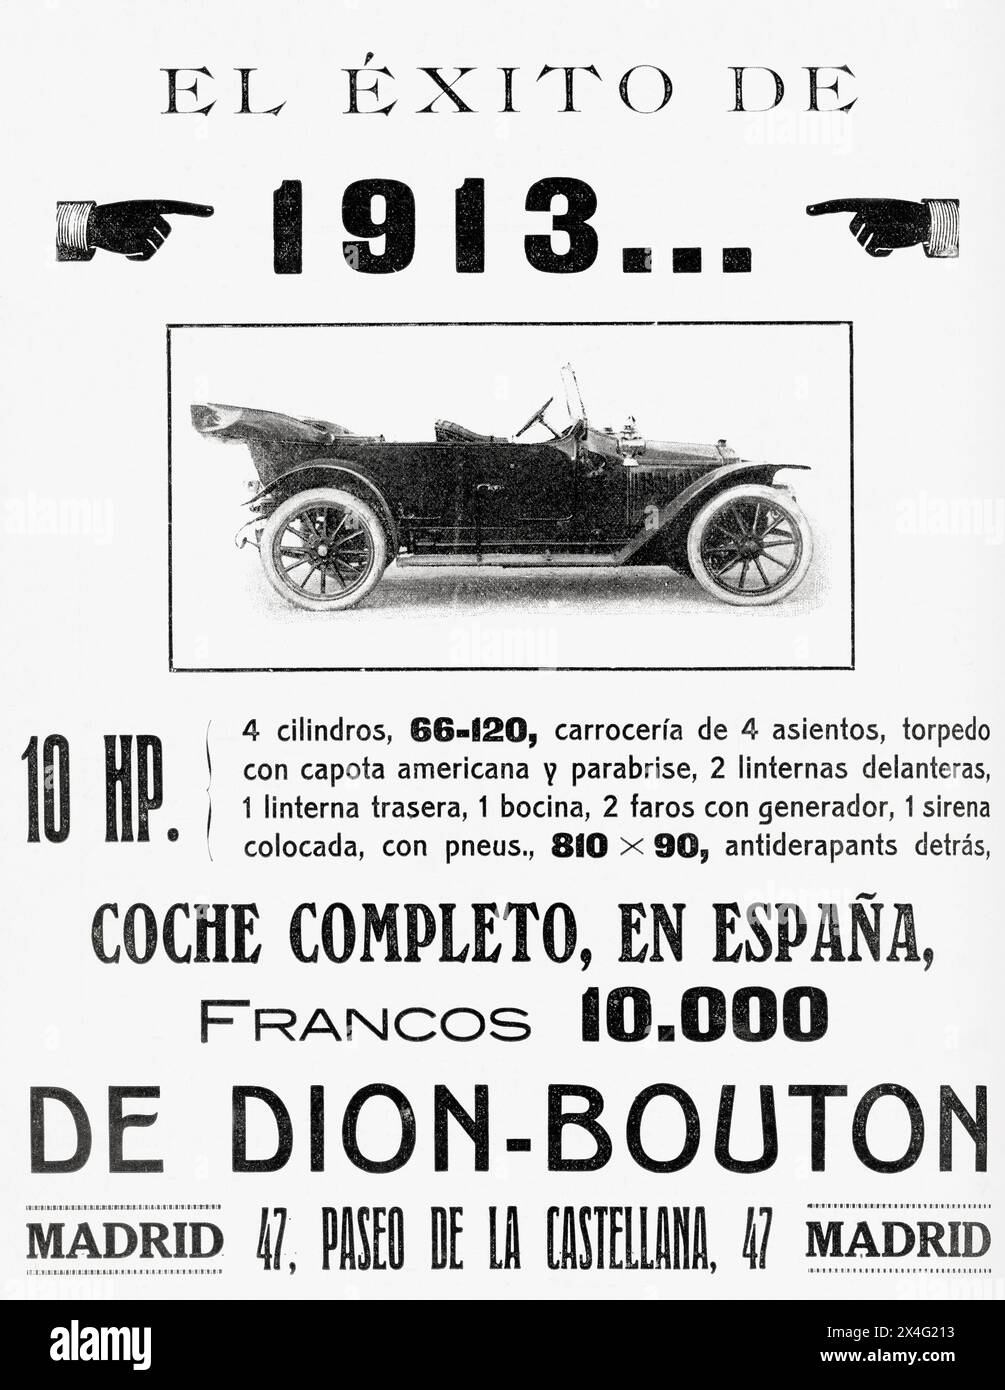 Spanische Werbung für einen de Dion-Bouton-Wagen. Aus Mundo Grafico, veröffentlicht 1912. Stockfoto